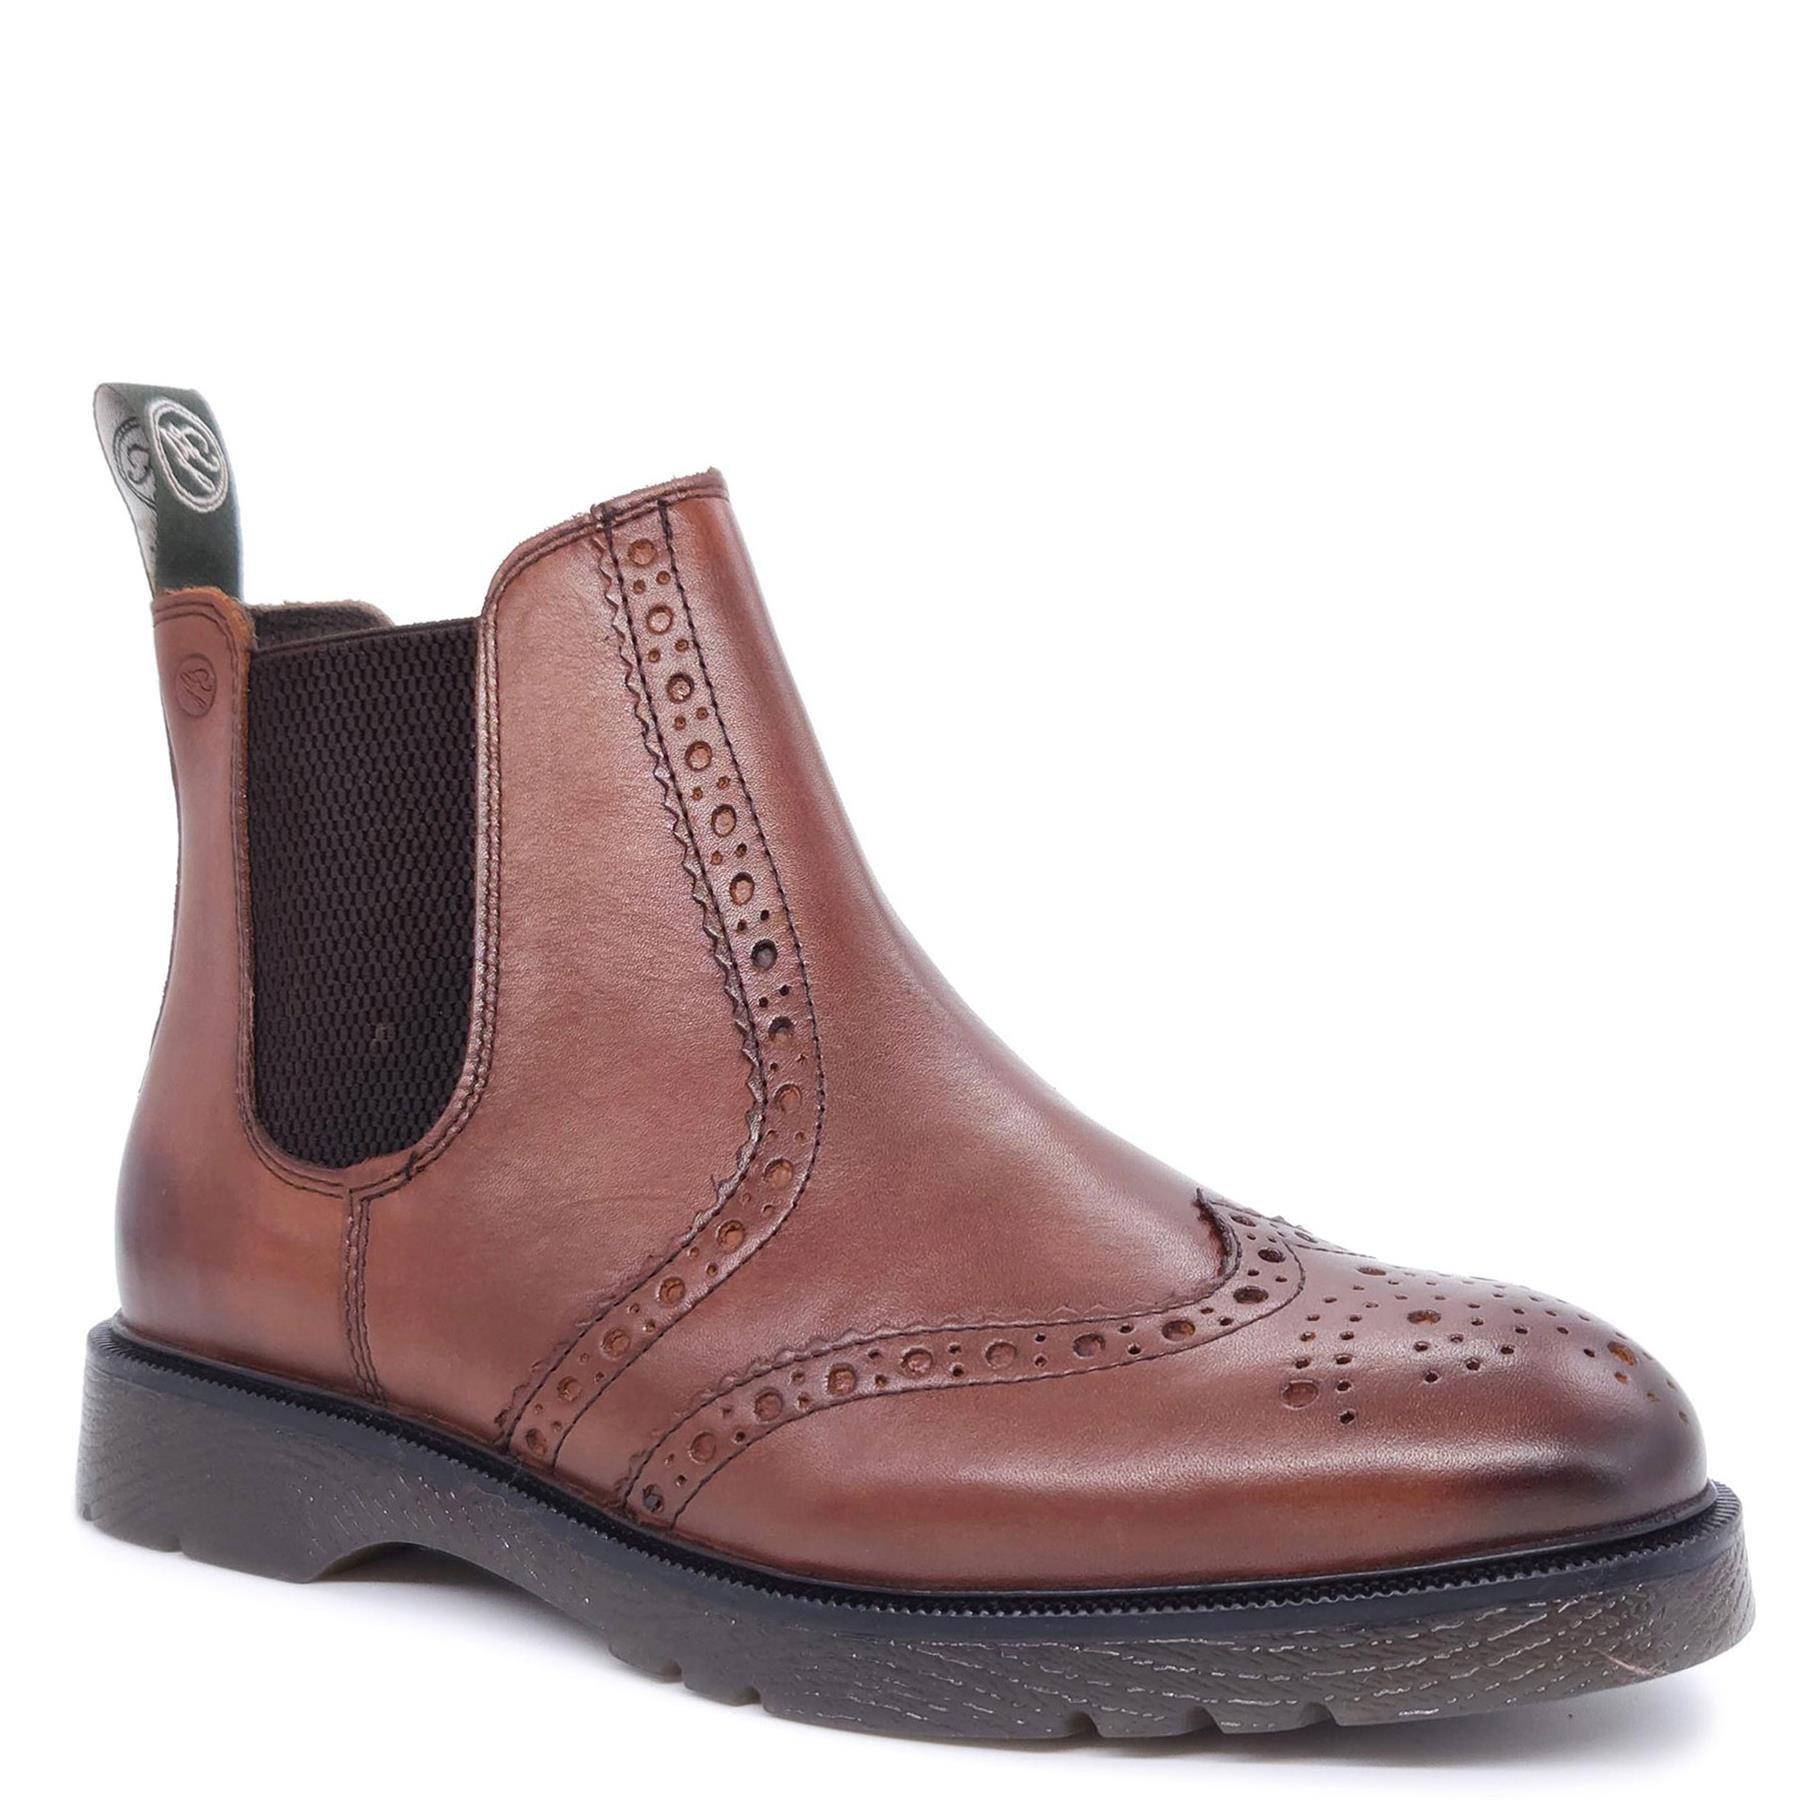 Кожаные ботинки челси с эффектом броги Warkton Frank James, коричневый